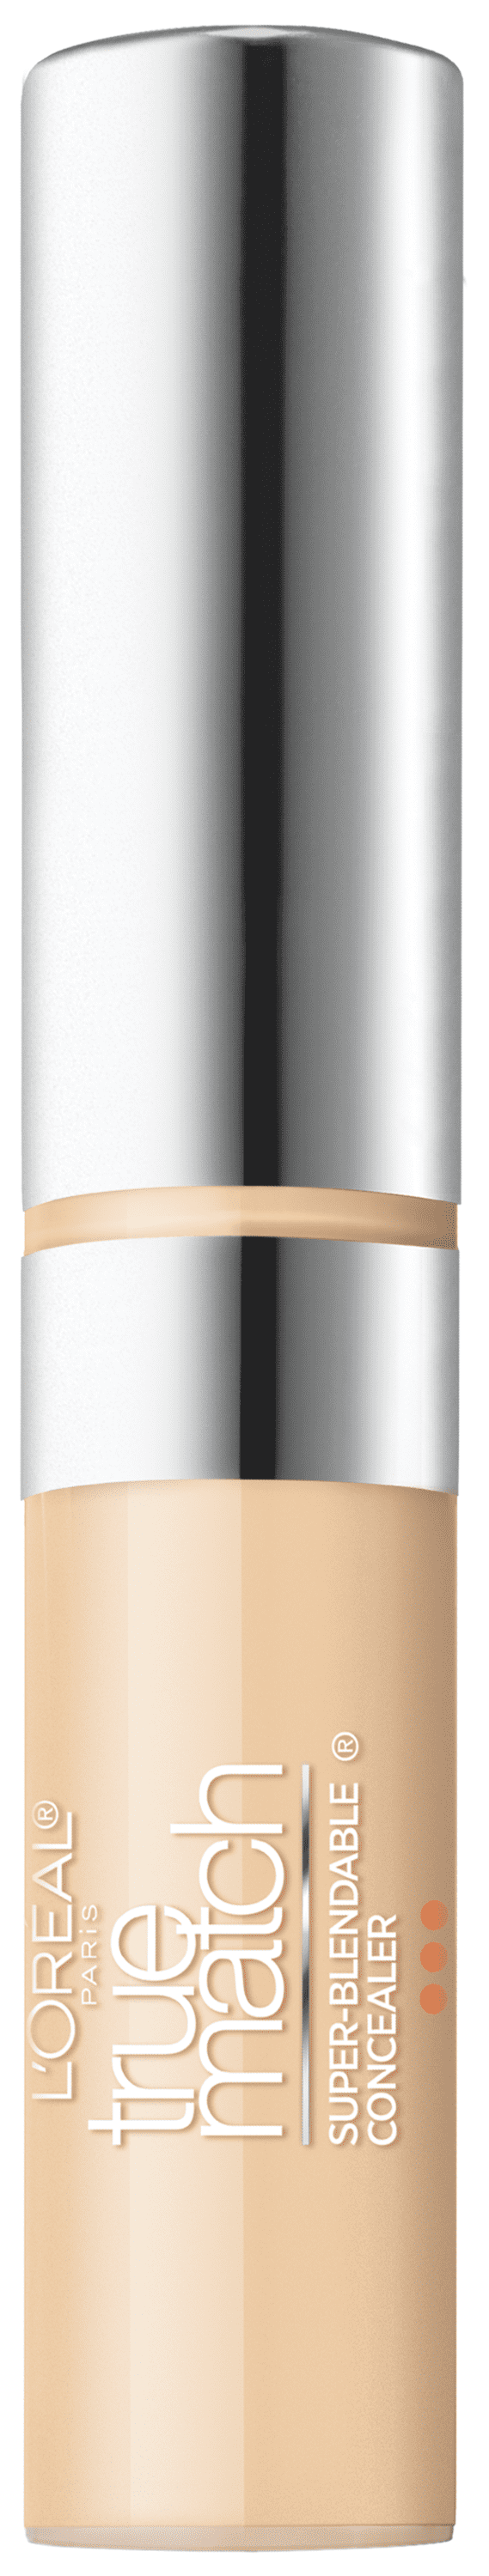 L'Oreal Paris True Match Super-Blendable Concealer, Neutral and Fair Light, 0.17 fl oz